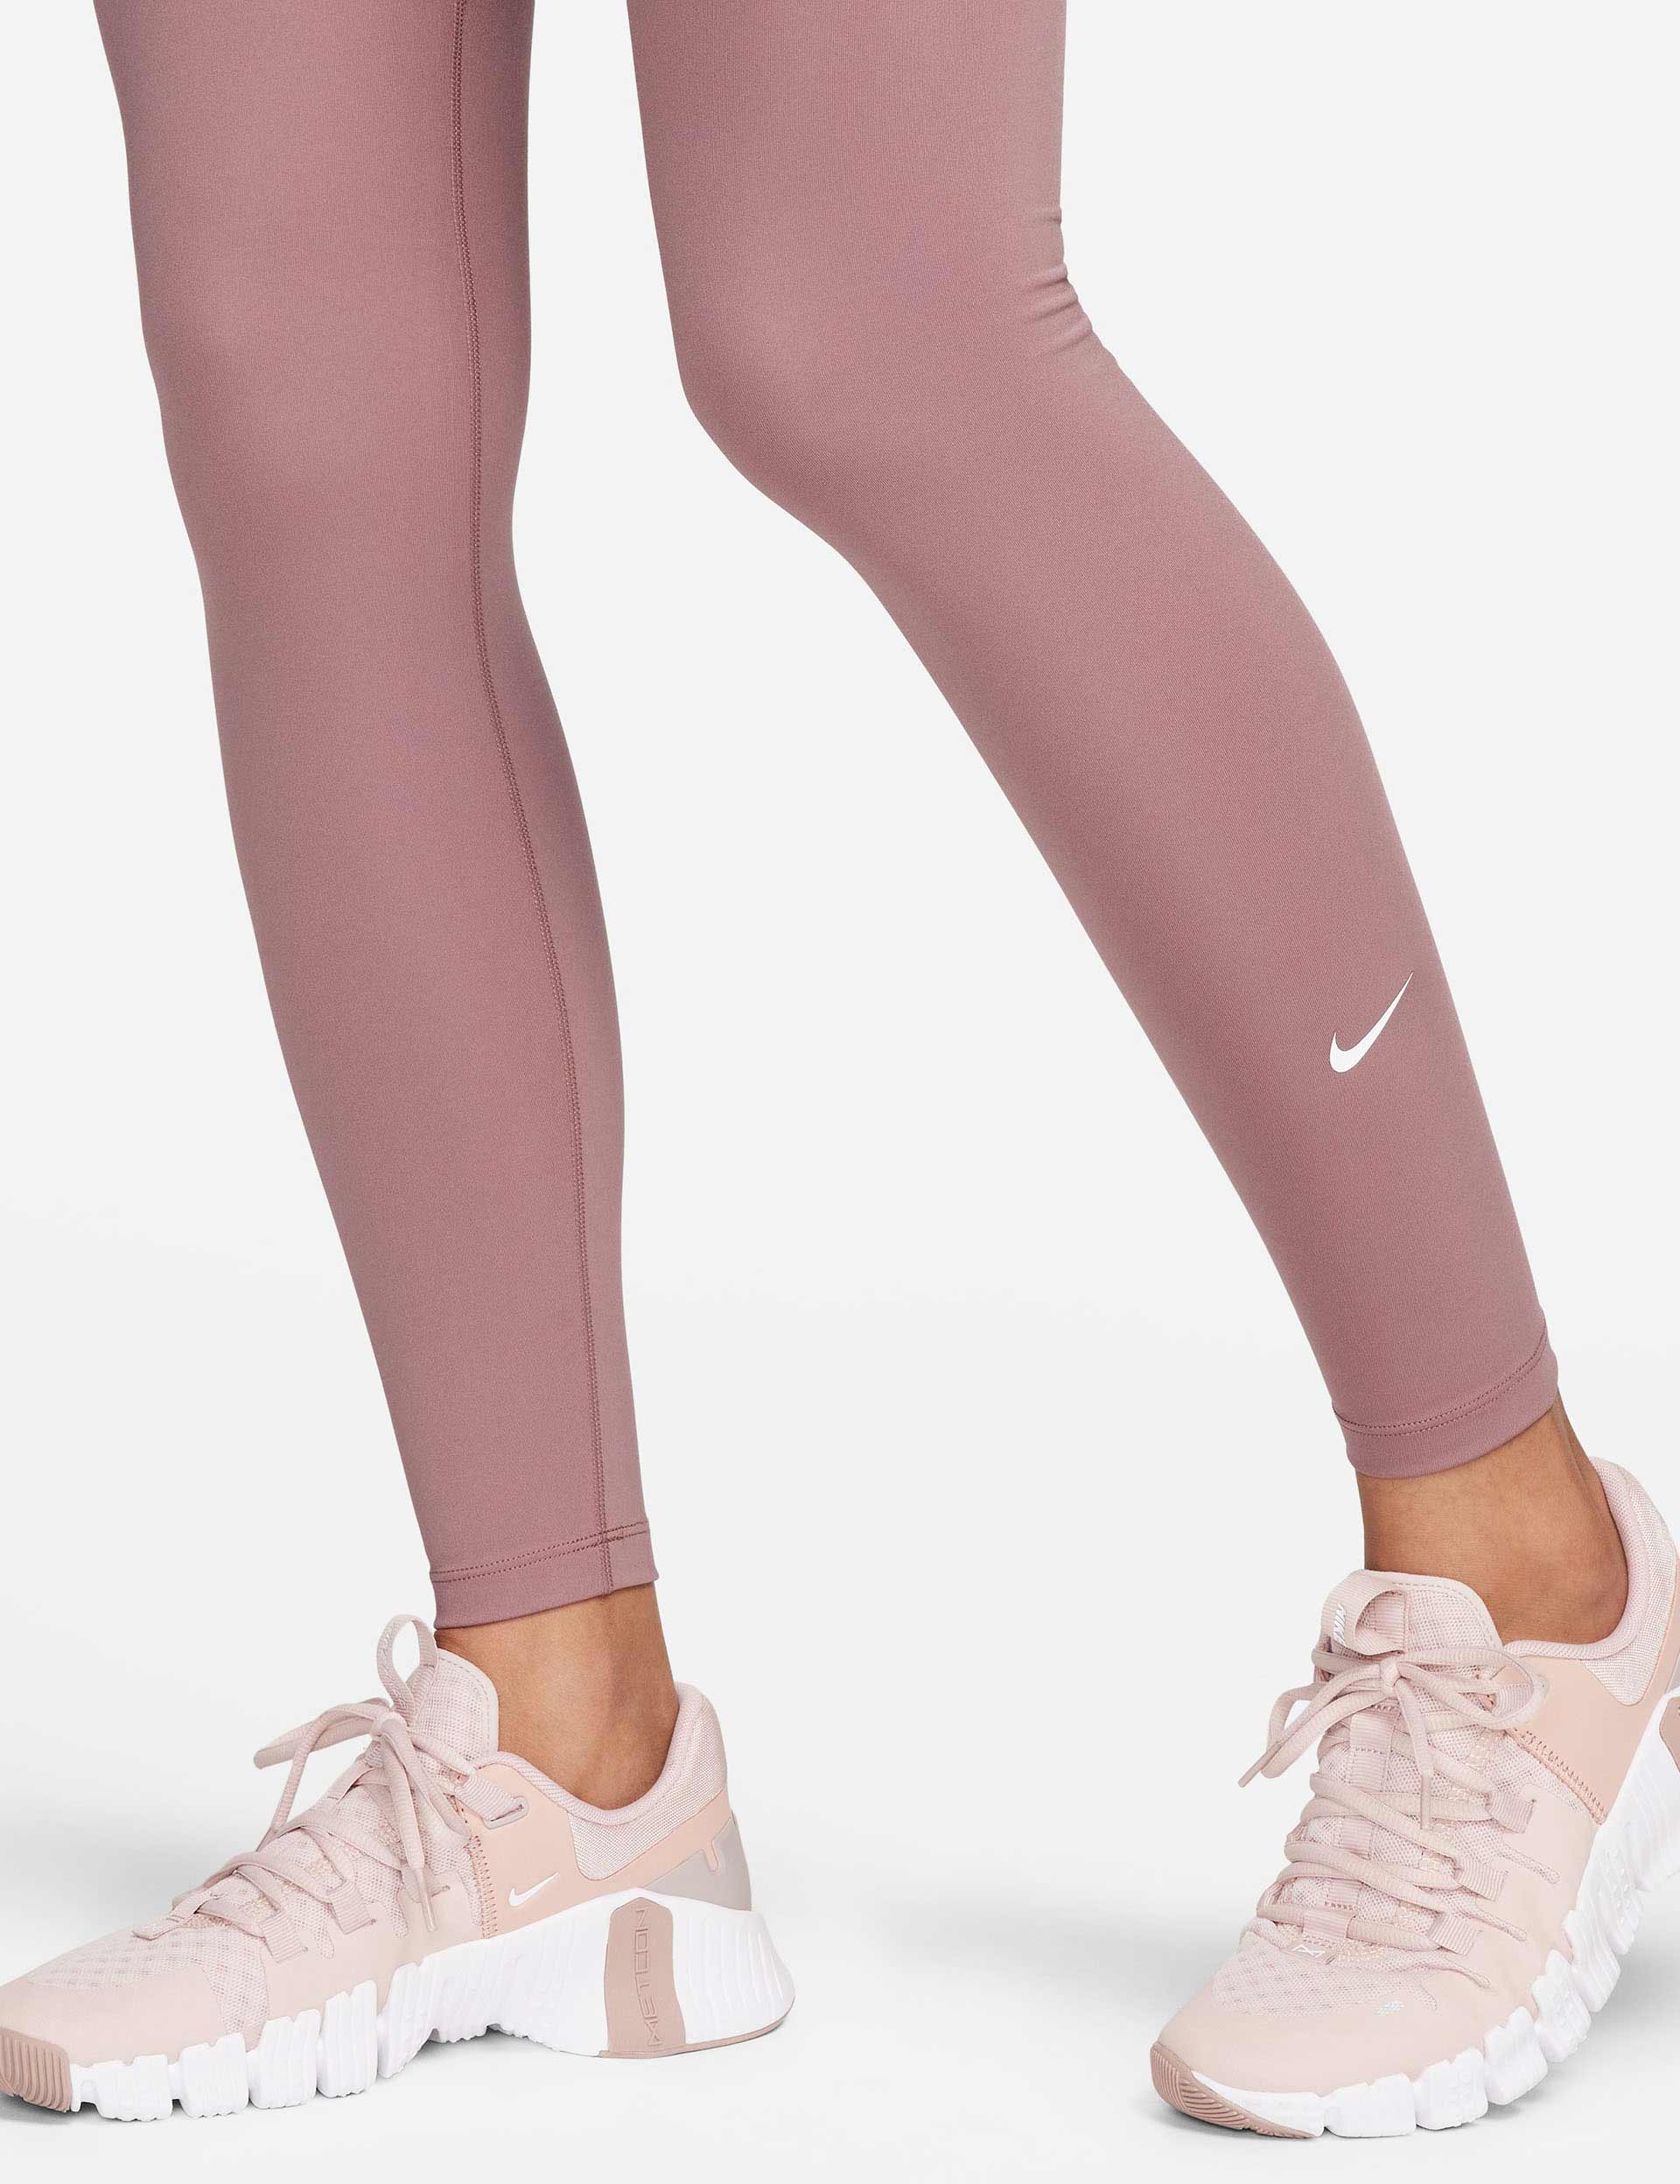 Nike One Women's Training Tights - Polar/White